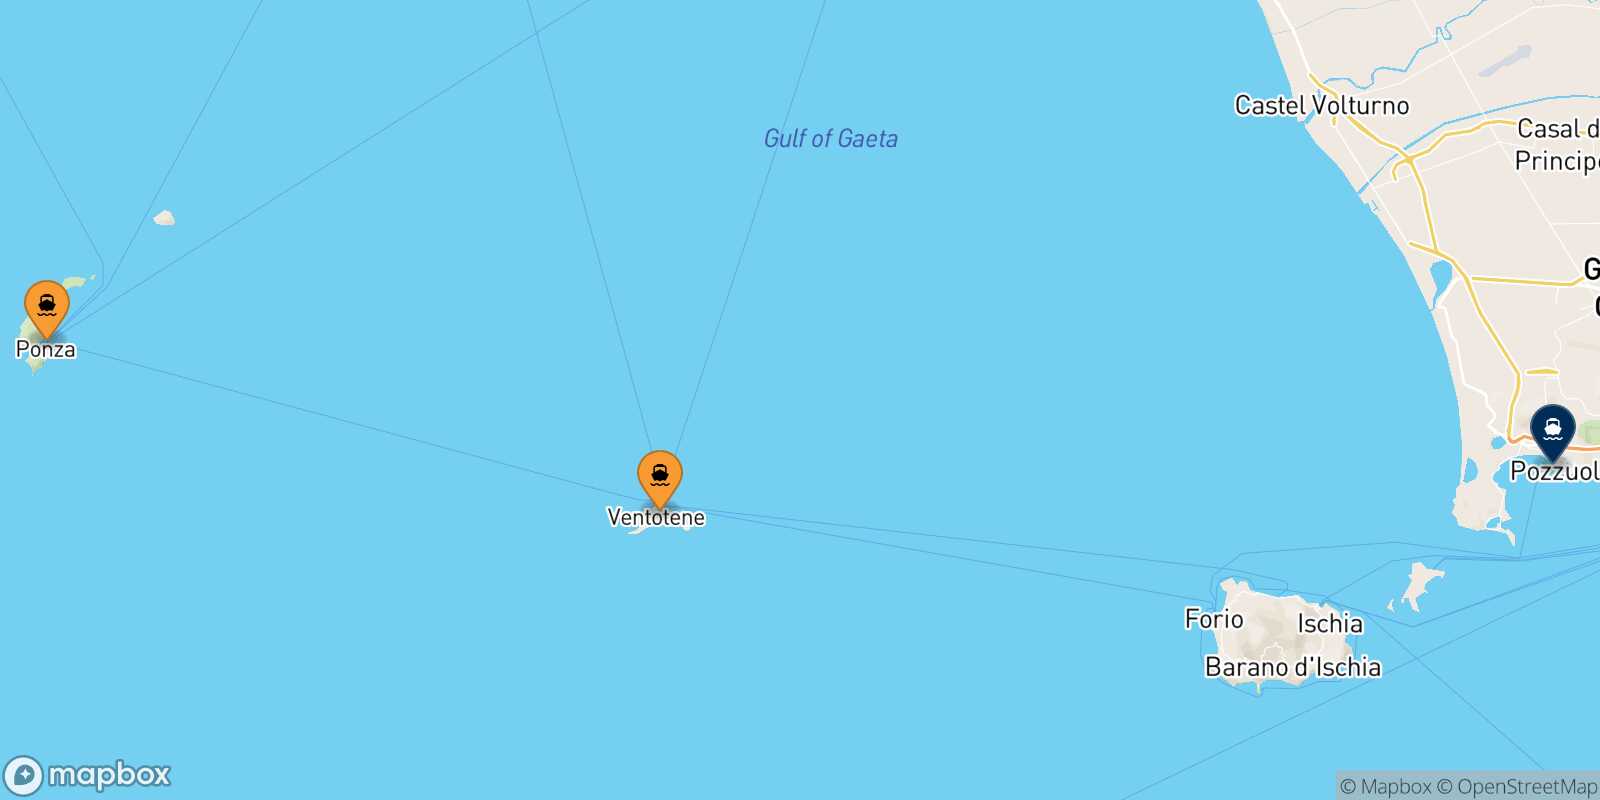 Mappa dei porti collegati con  Casamicciola (Ischia)